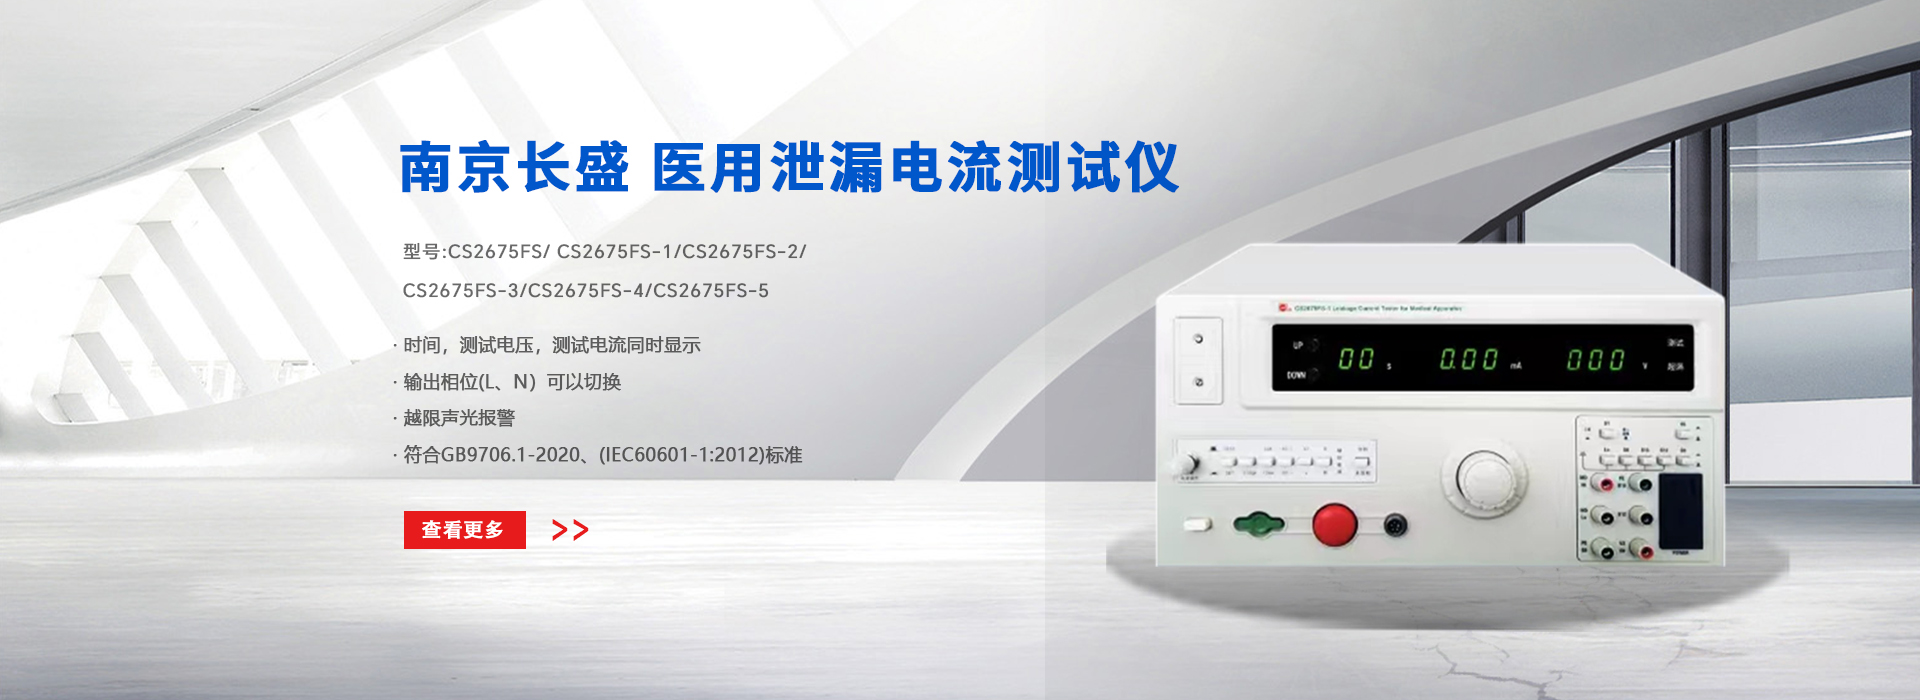 北京市华联仪器仪表销售服务有限公司